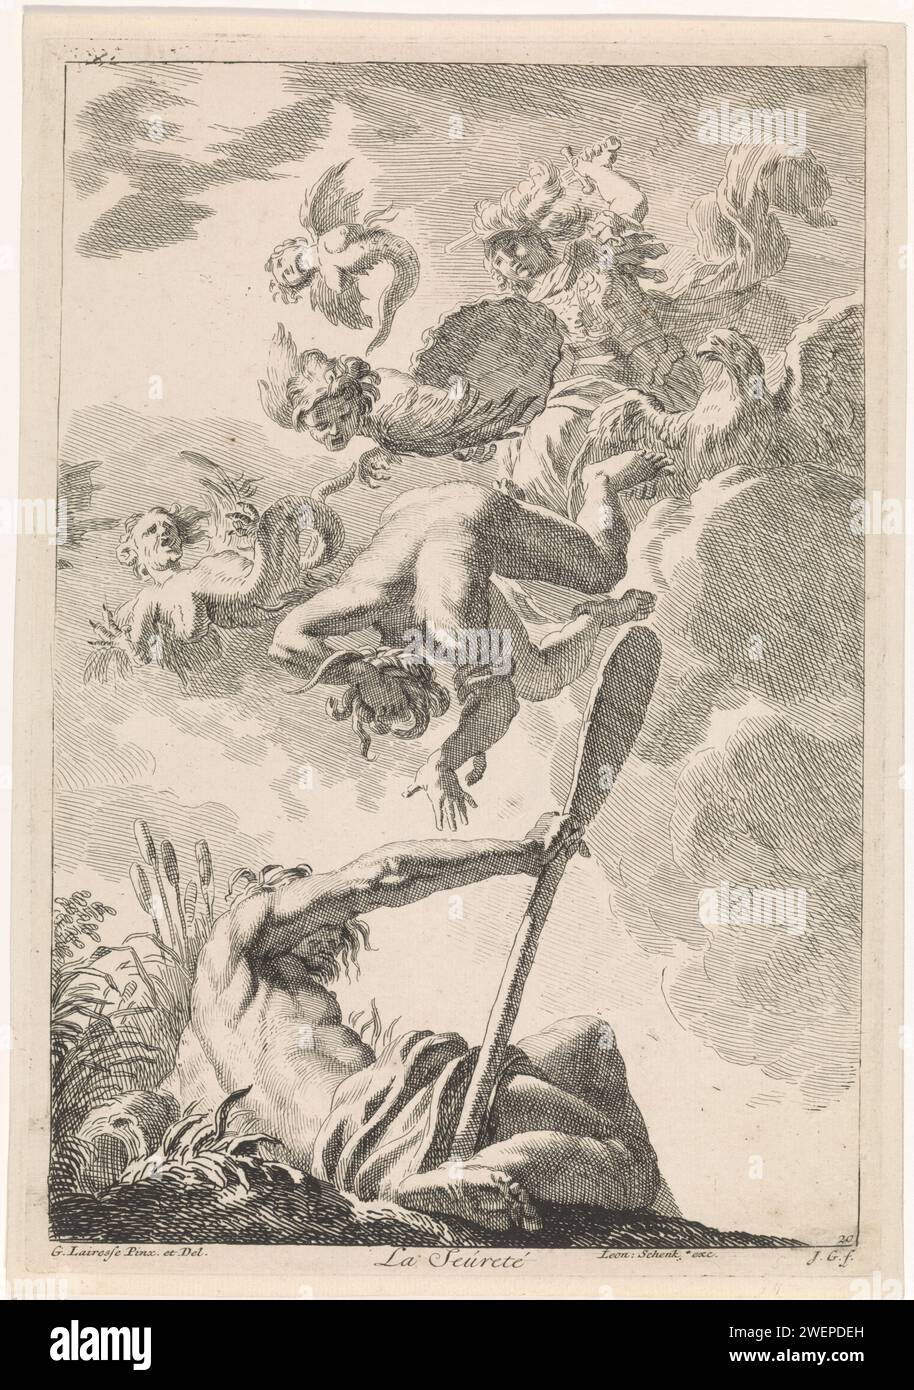 Minerva déplace l'envie : une allégorie par certitude, Johannes glaber, d'après Gerard de Lairesse, 1672 - 1726 imprimer la déesse Minerve déplace trois harpes et la personnification de l'envie du ciel. Au premier plan la personnification de la rivière Amstel. L'estampe est une peinture de plafond de Gérard de Lairesse et fait partie d'une série avec des représentations bibliques, mythologiques et allégoriques. Gravure sur papier (histoire de) Minerva (Pallas, Athéna). Envie ; 'Invidia' (Ripa) ~ personnification de l'un des sept péchés capitaux. rivière personnifiée, 'Fiumi' (Ripa). Harpies (mythologie classique) Amstel (rivière) Banque D'Images